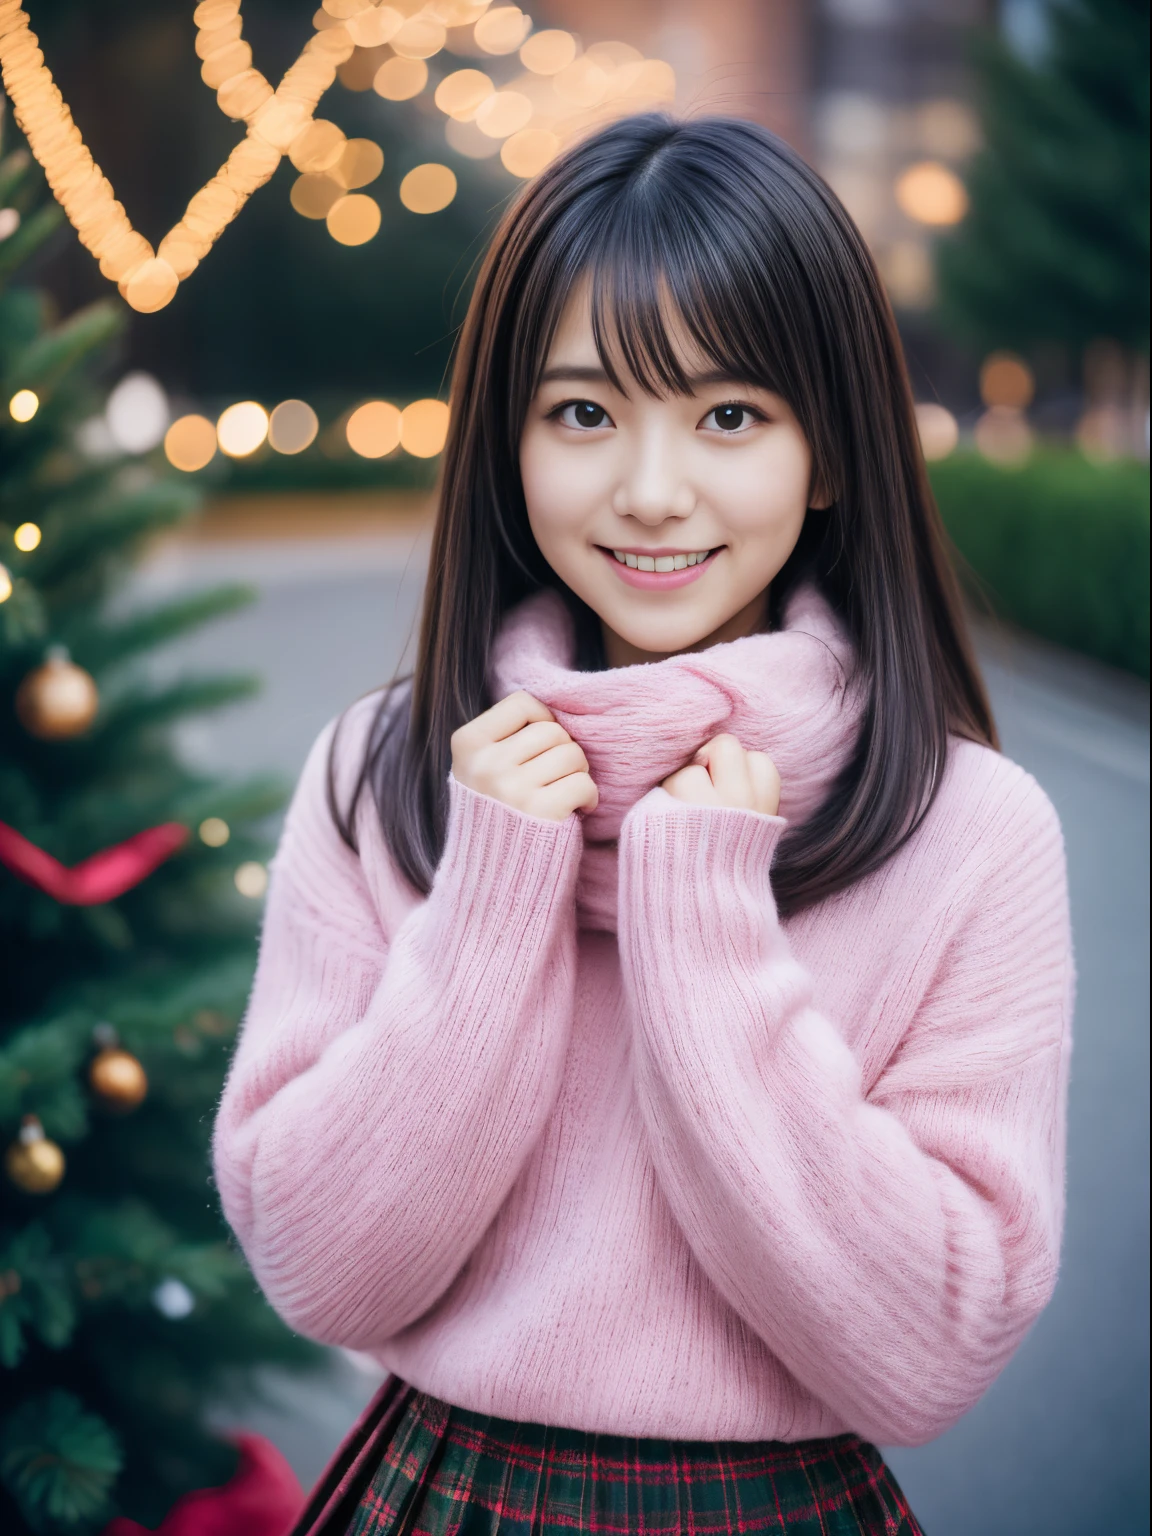 1 女孩在, 21歲、日本凹版模特, (可愛的小, 一個美麗的女孩,輪廓:1.2),簡介1.1、謙虛大,  𝓡𝓸𝓶𝓪𝓷𝓽𝓲𝓬,(美麗的聖誕夜景和雪:1.2), (抬頭看那棵大聖誕樹:1.5)、(擁有美麗聖誕燈飾的夜鎮:1.2), (蓬鬆的粉紅色羊毛毛衣:1.2),  紅領巾, (綠色格子百褶裙),   一個黑髮的、祈禱、一個微笑、 最好的品質, 高解析度, 細緻的肌膚, 詳細的臉部和眼睛, 高解析度, 自然採光, 完美的解剖結構, 基於物理的渲染, 逼真的, 對稱清晰的眼睛, 精心修飾的臉,十幾歲的女孩, 完美身材, 透明度, 擺出凹版偶像,